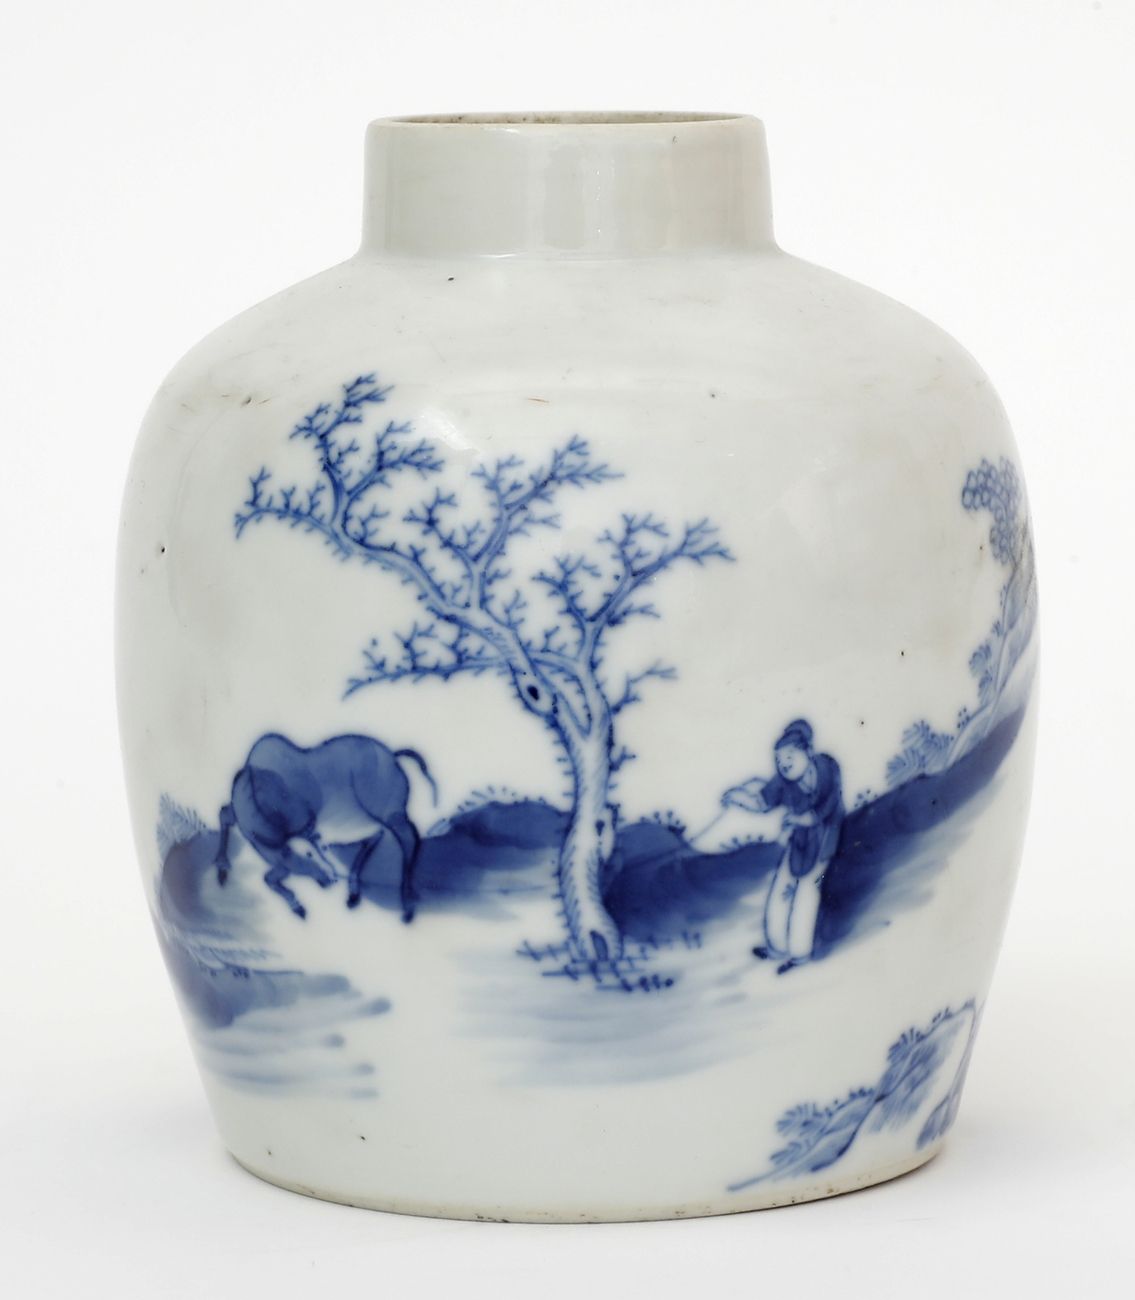 Null 中国，19世纪，为越南
一个用蓝白珐琅彩装饰的人物和水牛的瓷质球状花瓶。
底座下有诗和四个字的标记。
高度：12.5厘米